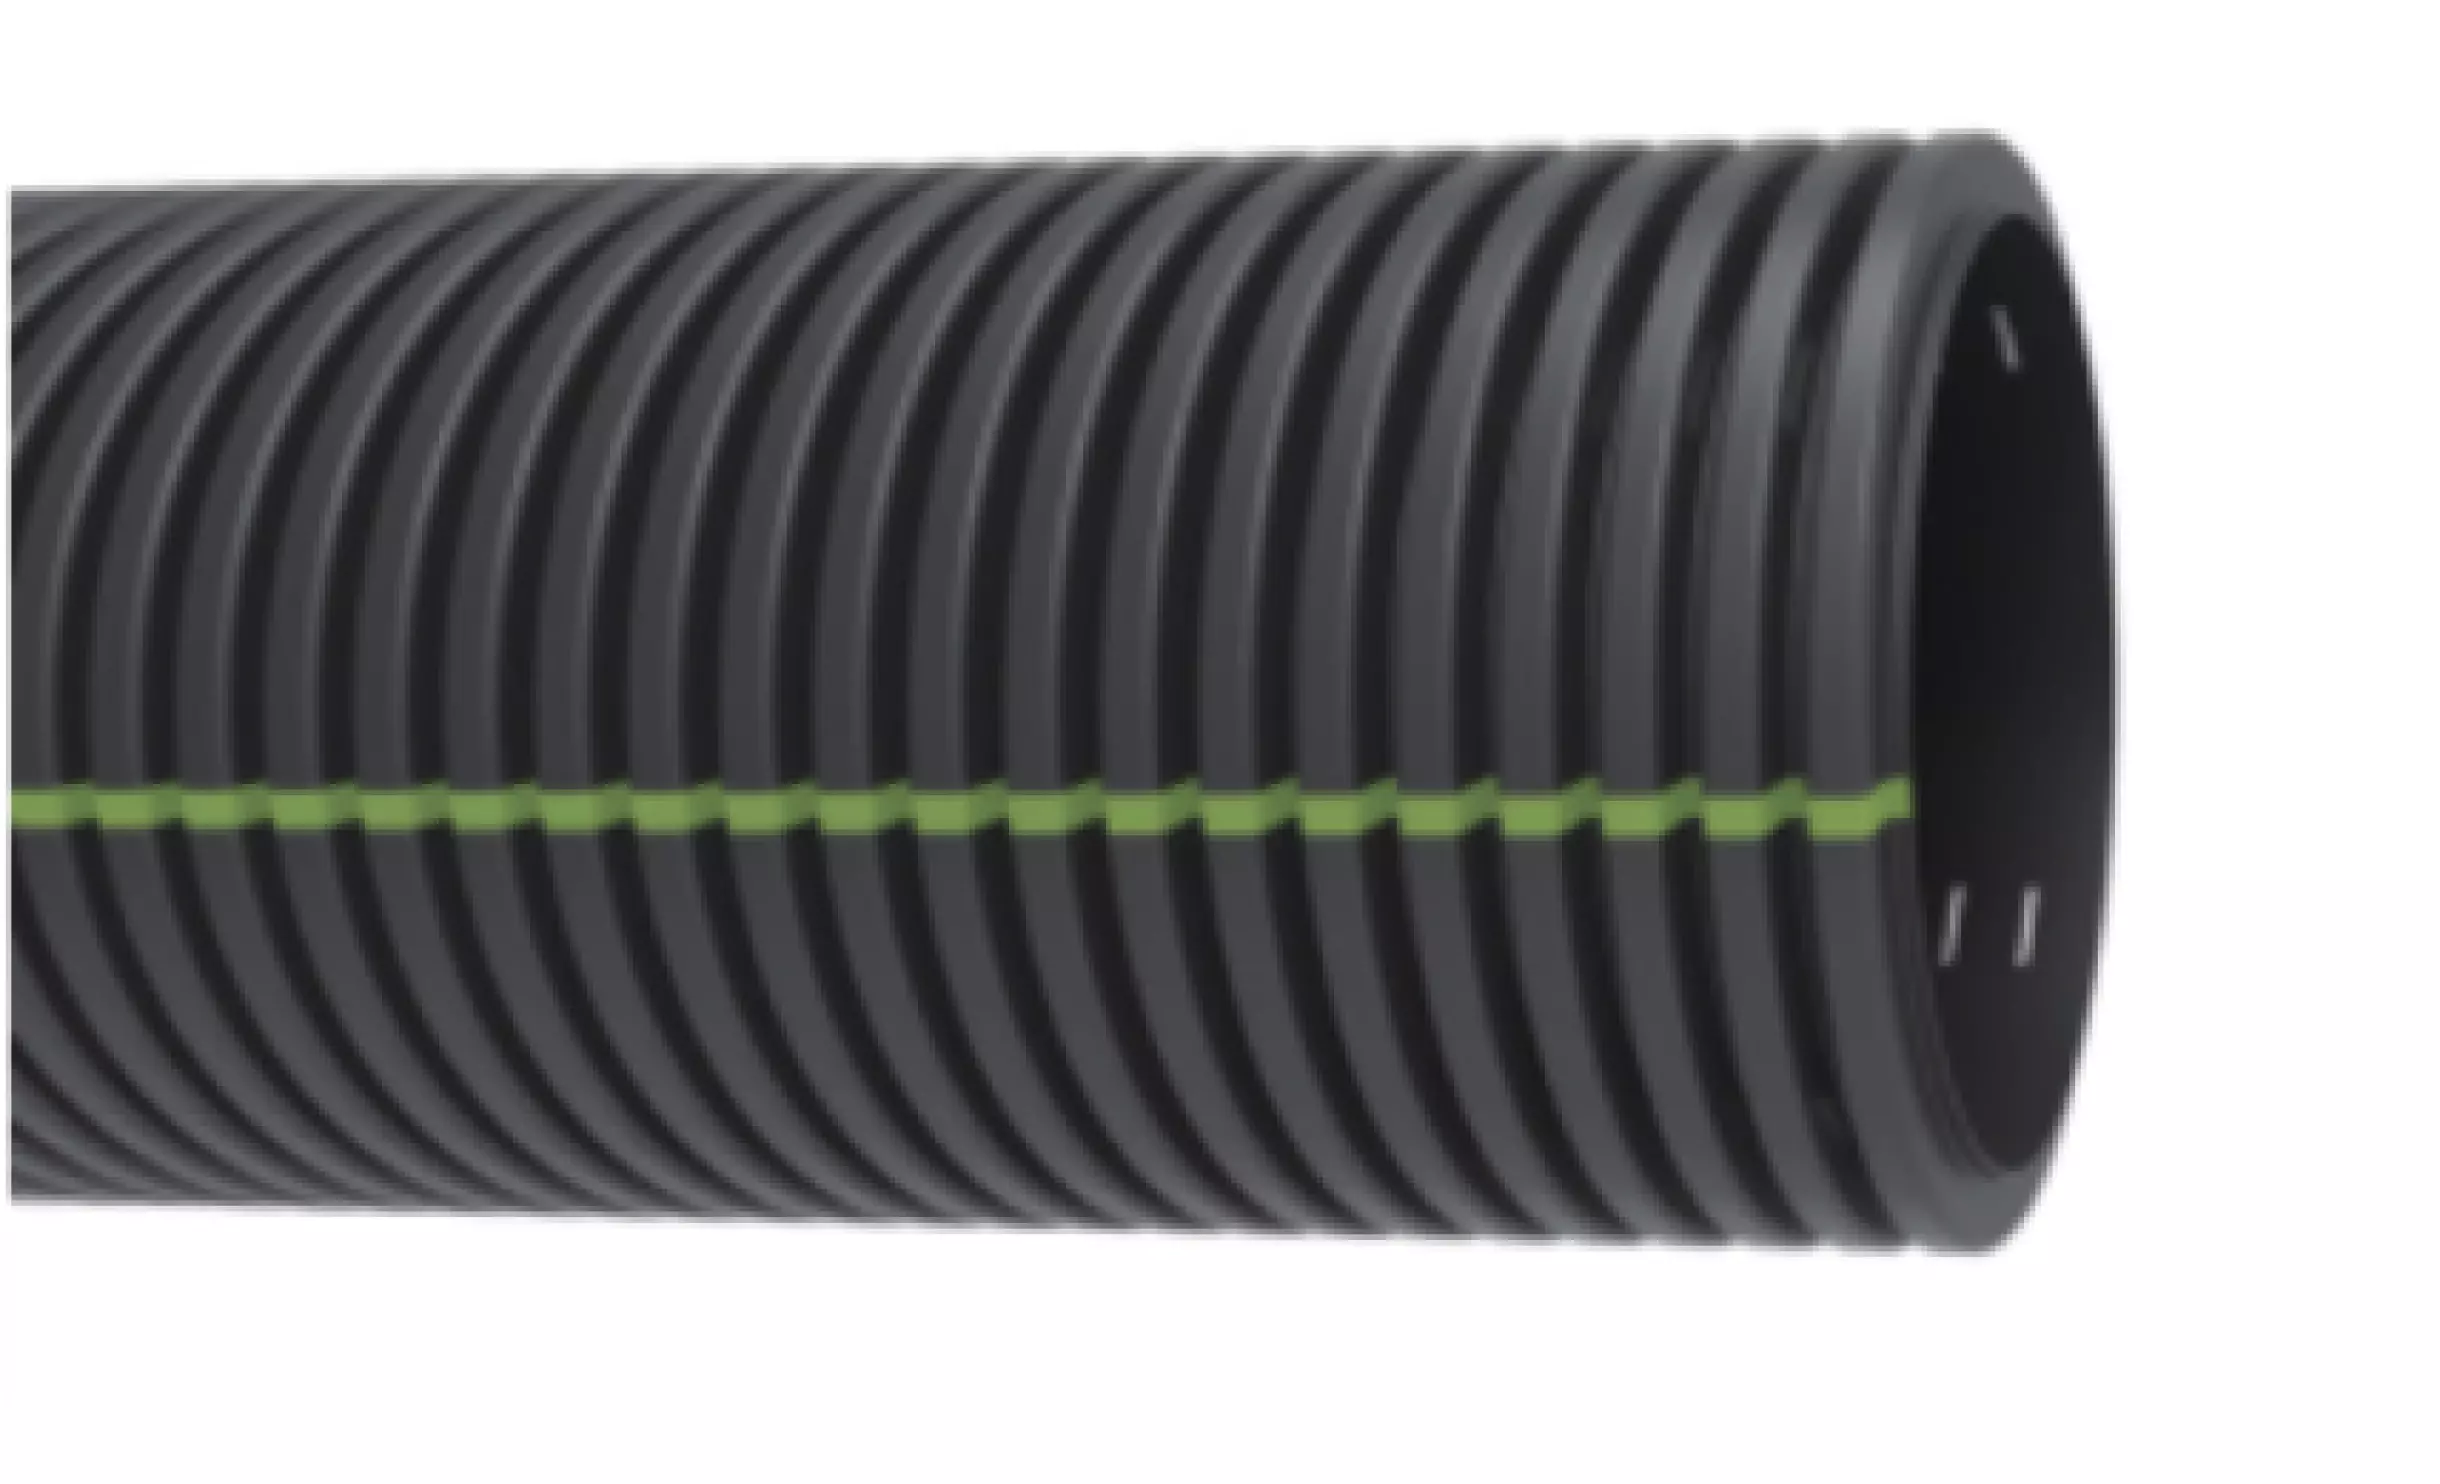 Tubos de HDPE con estructura espiralada o corrugada para redes de drenaje enterrados